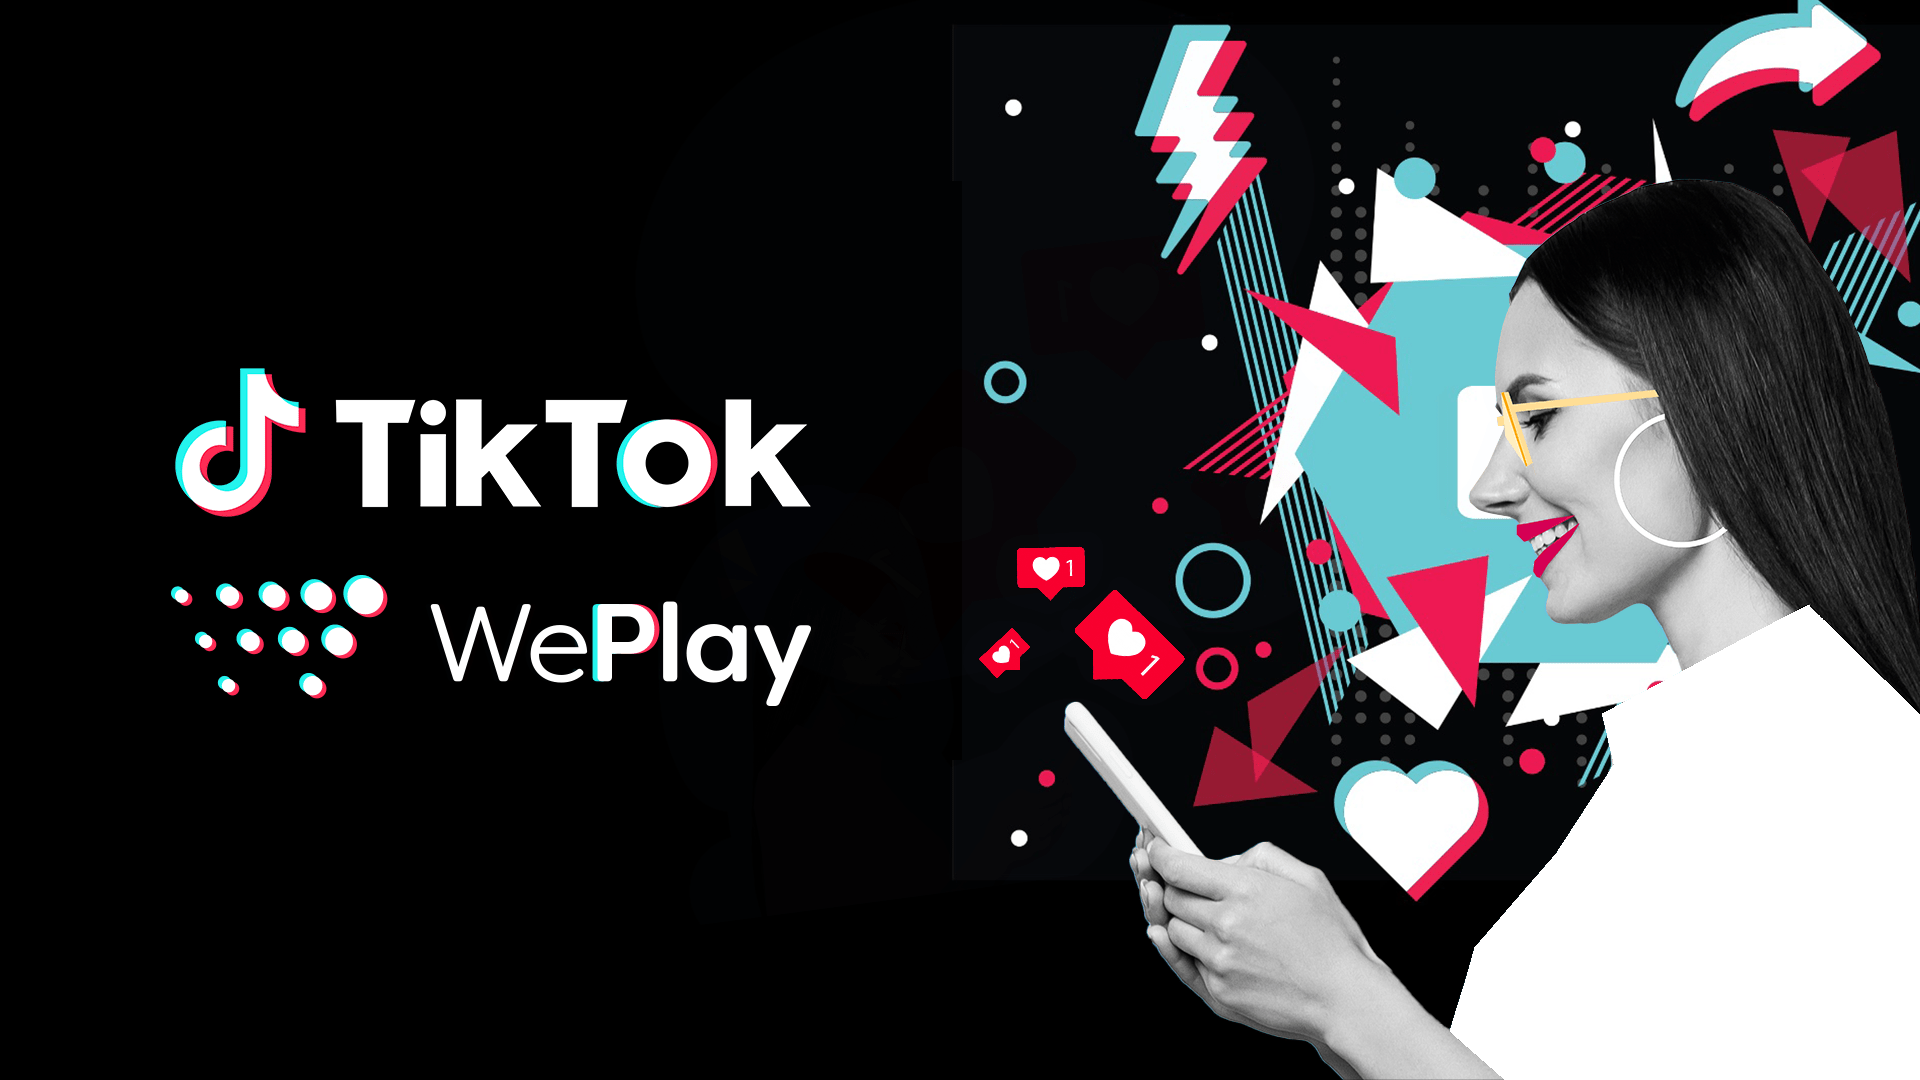 TikTok WePlay